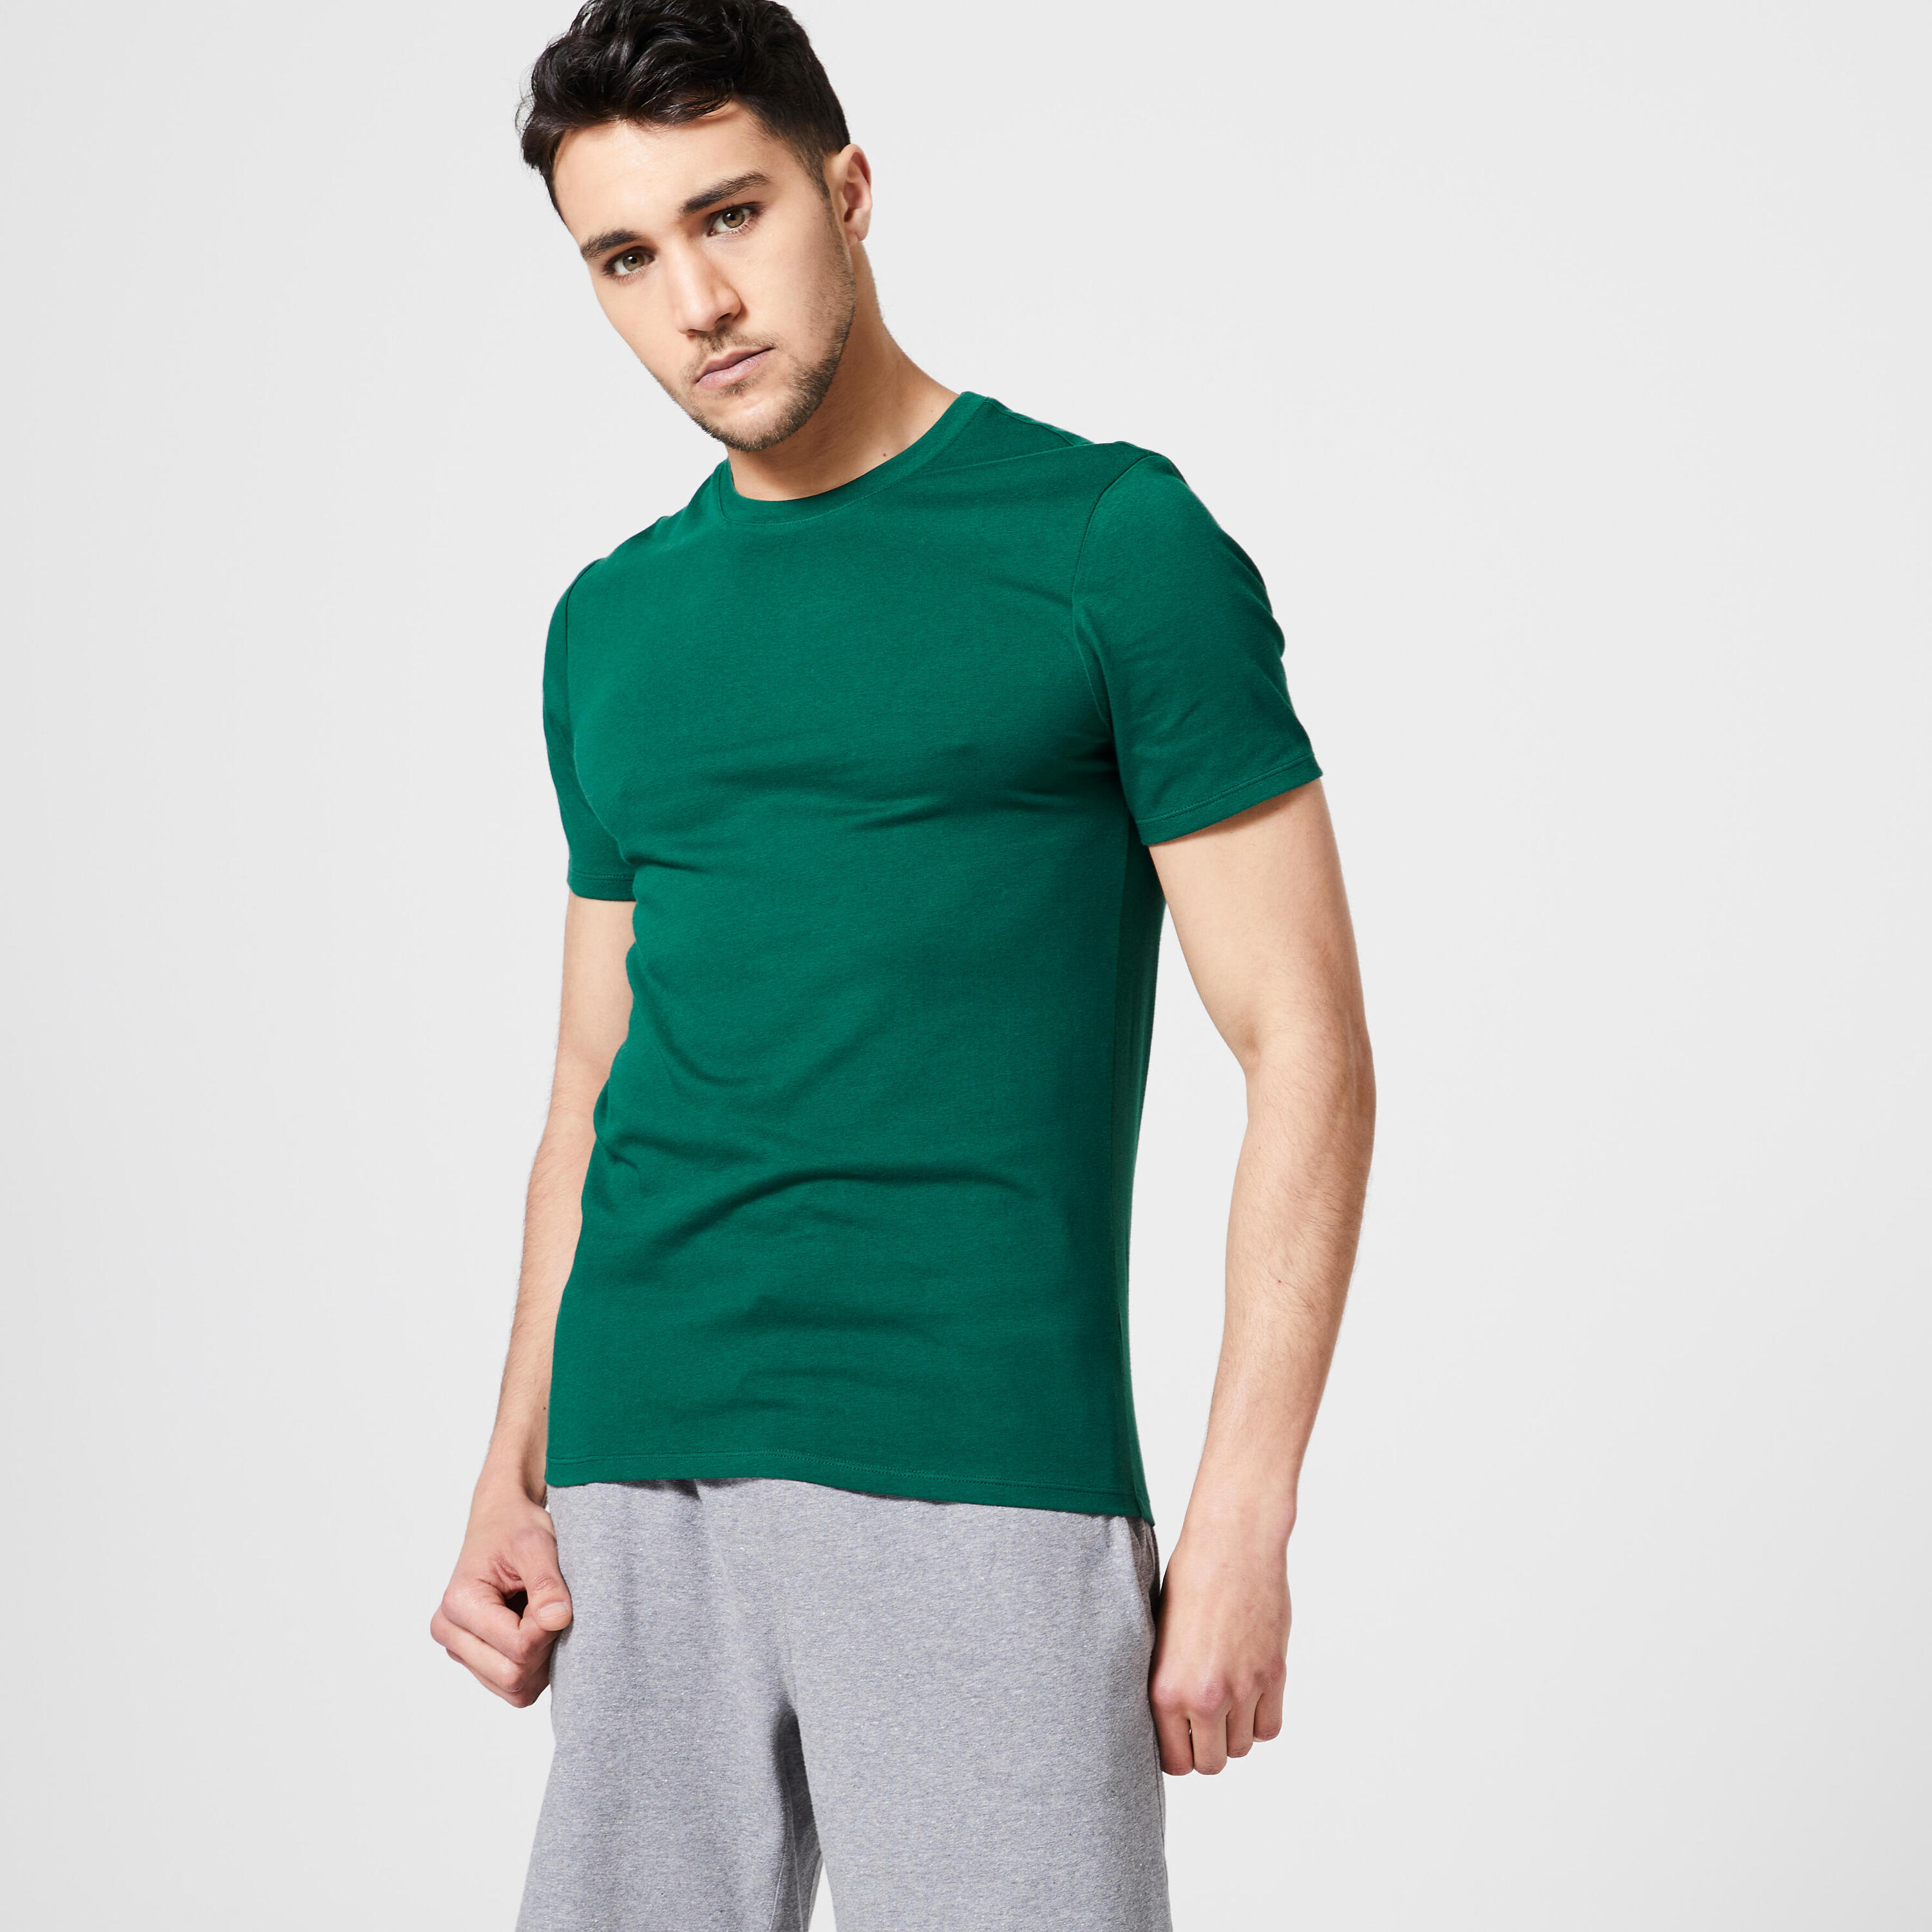 Men's Slim-Fit Fitness T-Shirt 500 - Cypress Green 2/7